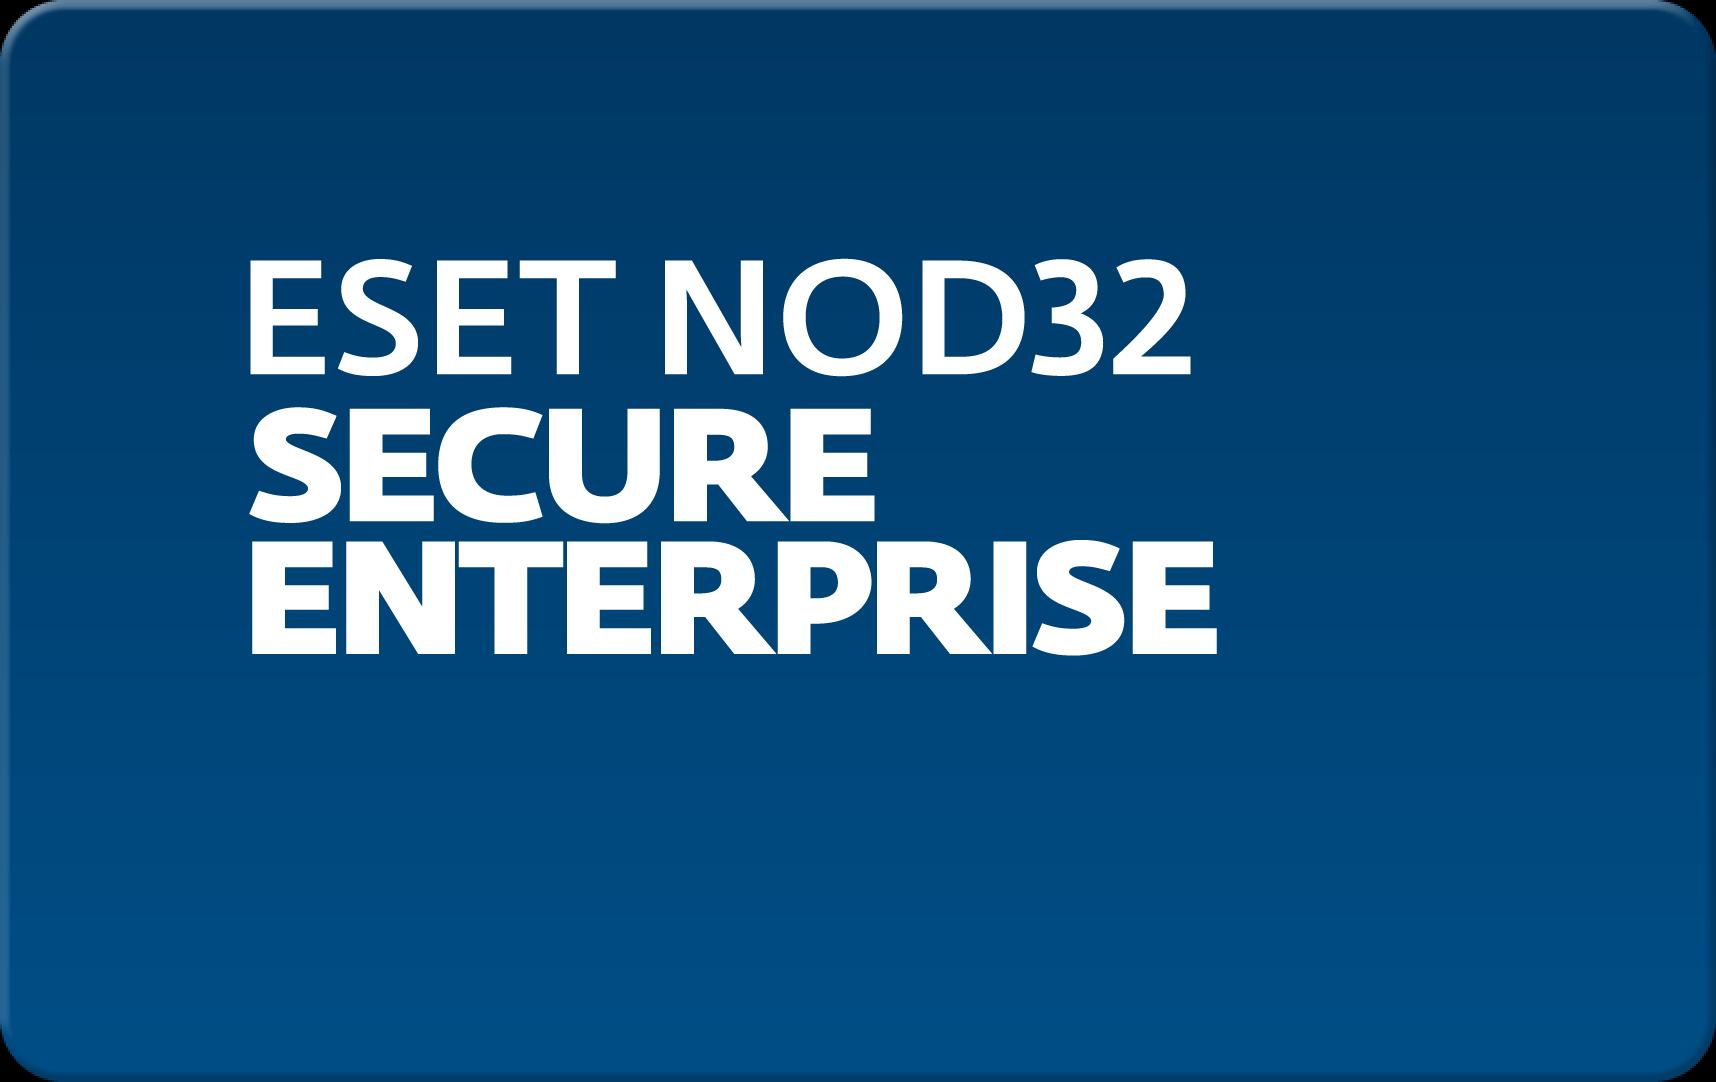        Eset NOD32 Secure Enterprise  185 